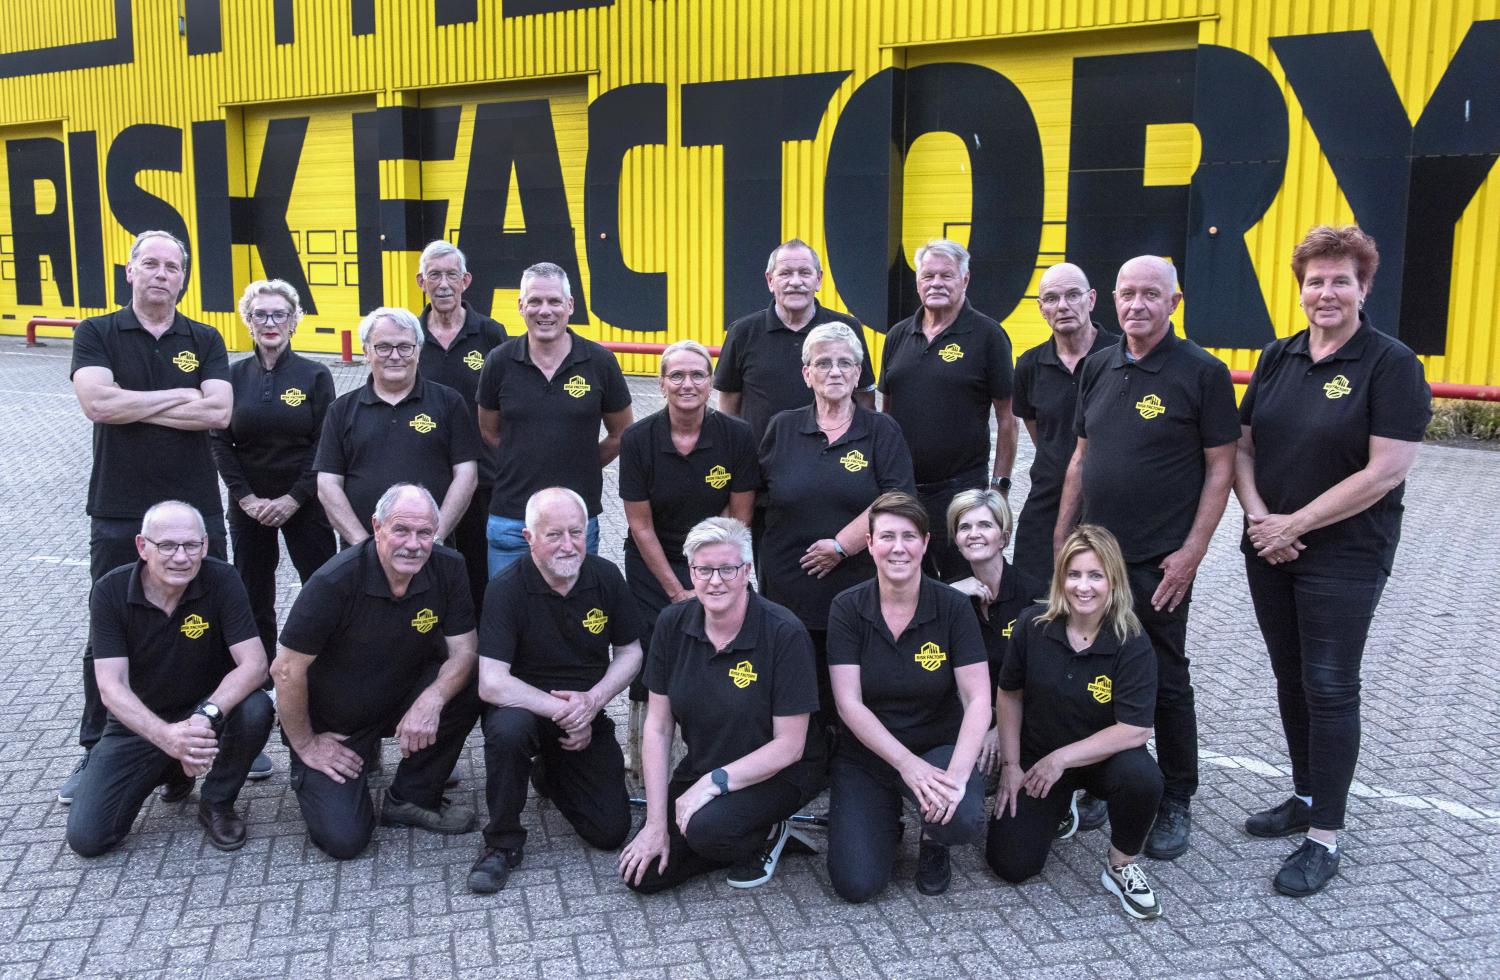 Groepsfoto van de begeleiders van Risk Factory Limburg-Noord voor het gele gebouw van de Risk Factory